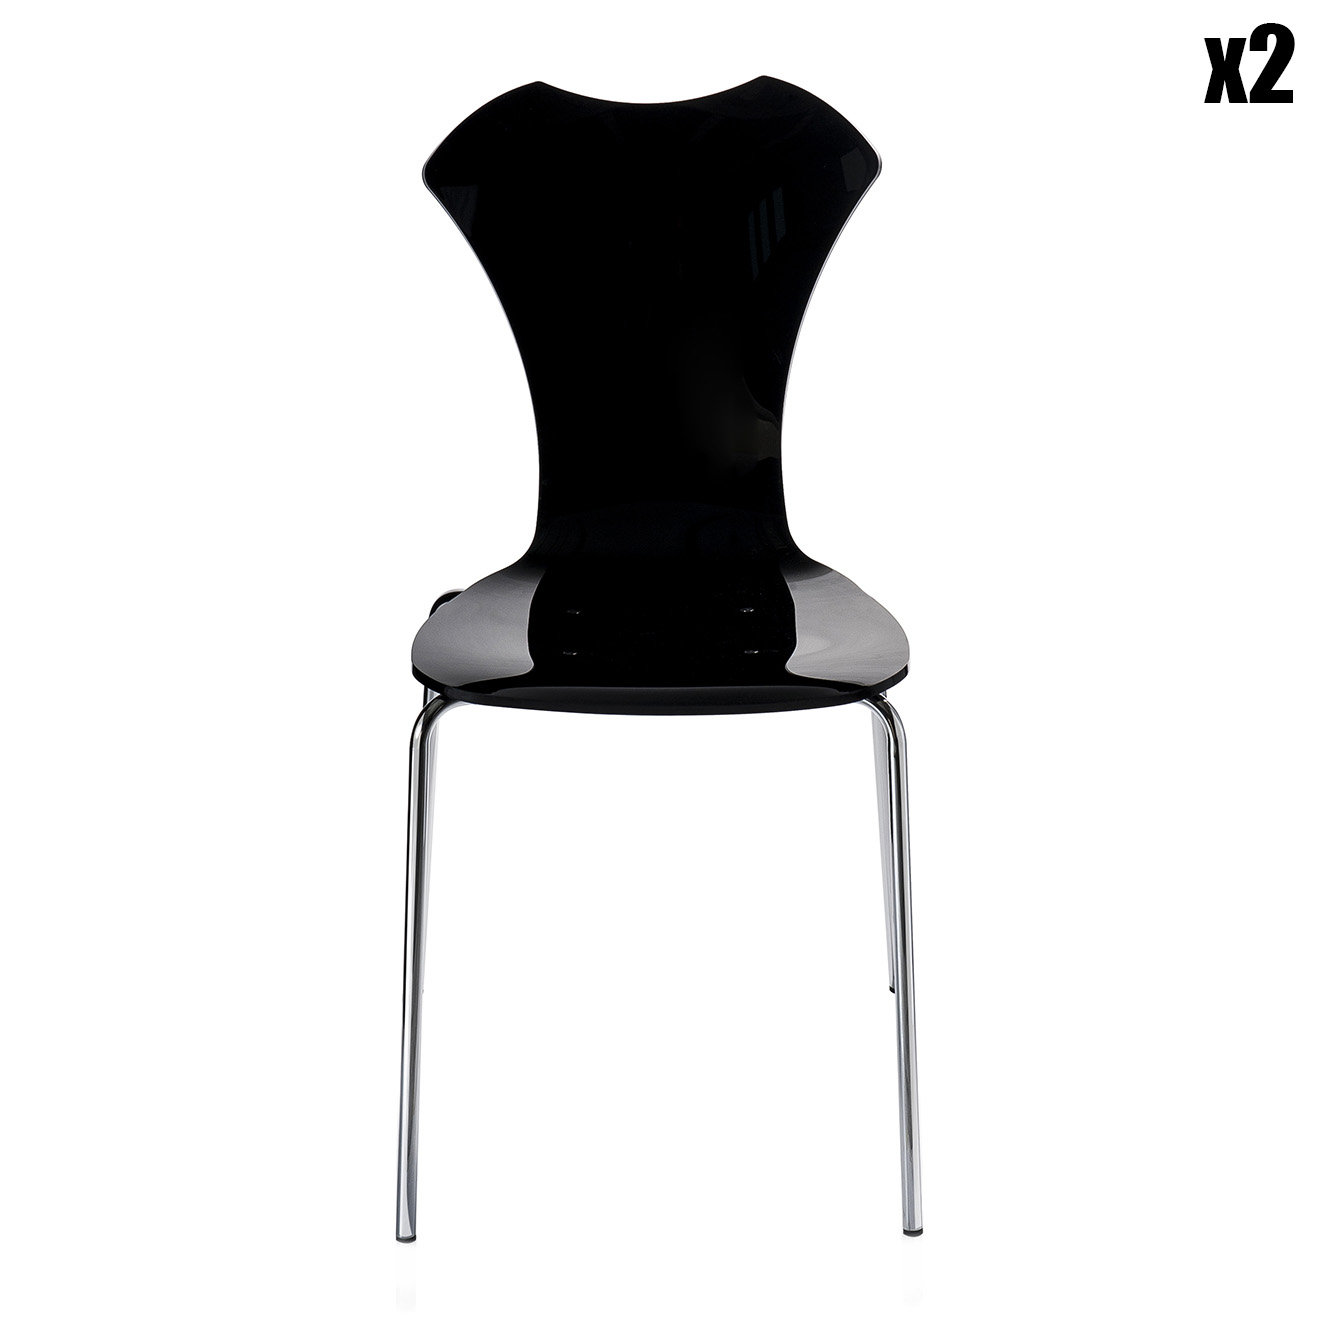 2 Chaises empilables Tina noires - 40x46x86 cm